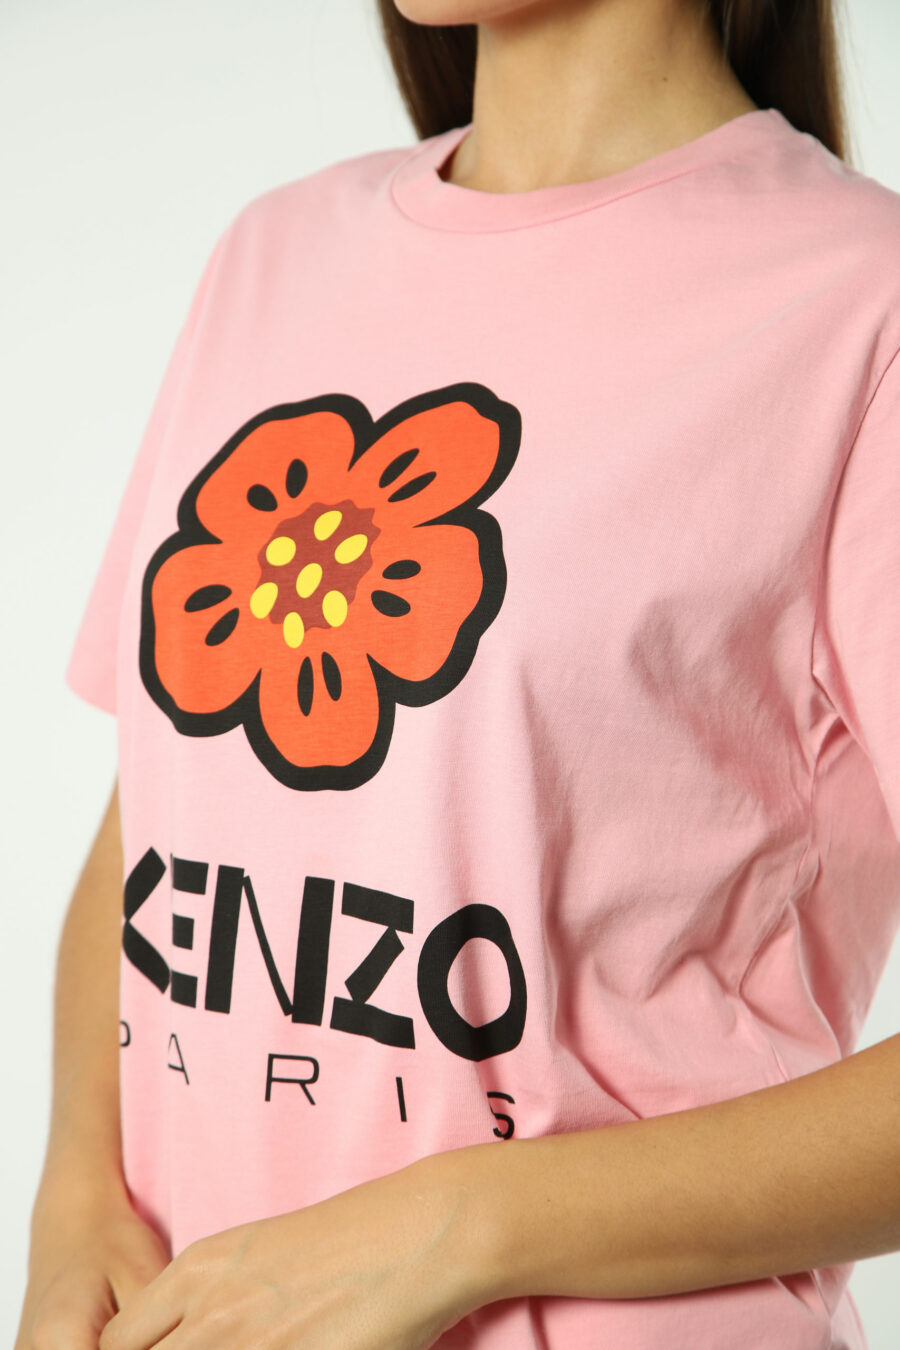 T-shirt rosa com maxilogo de flores laranja - Fotos 1405